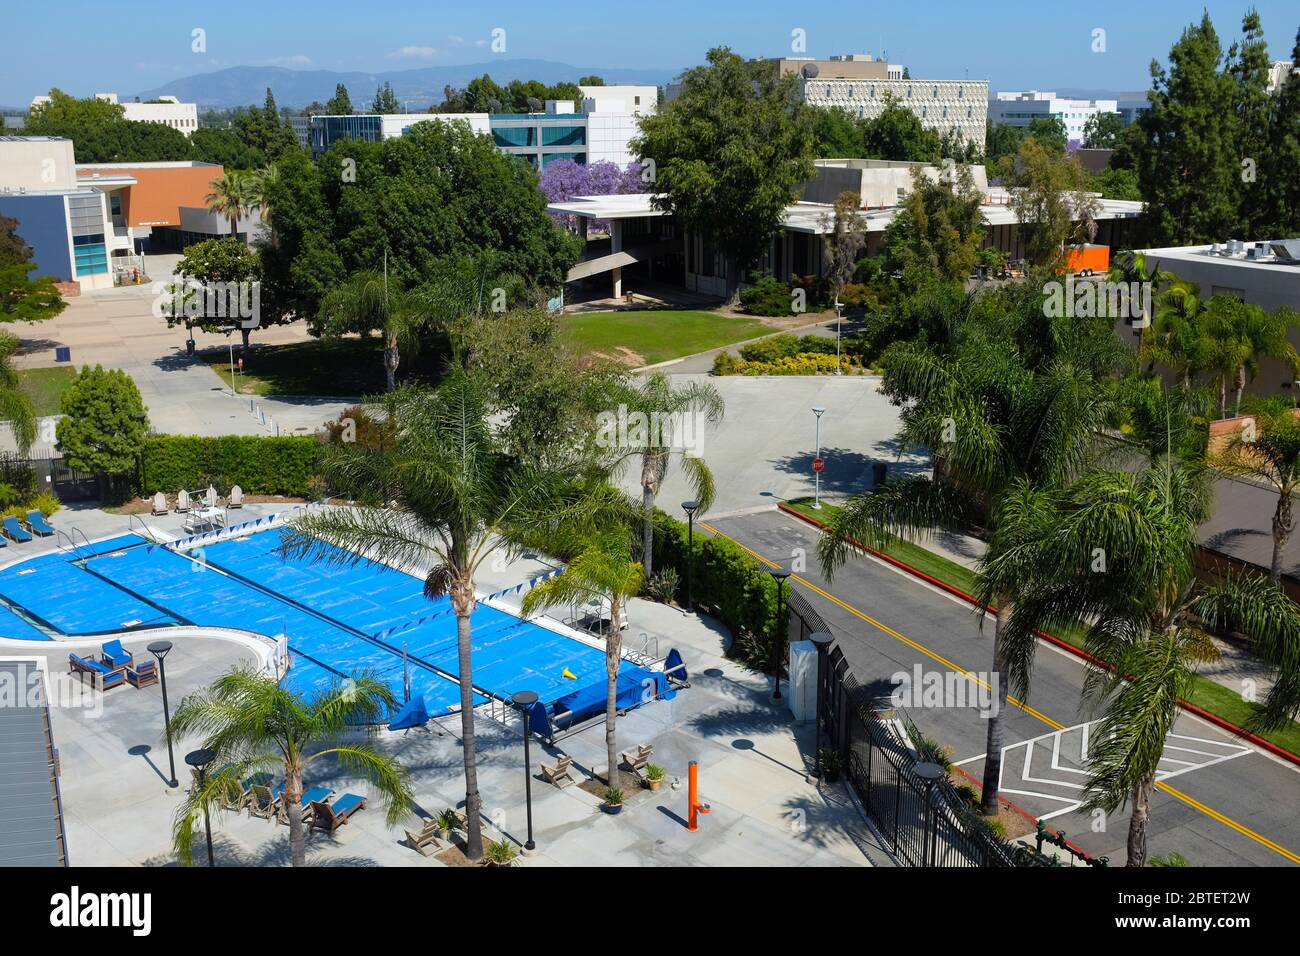 FULLERTON CALIFORNIA - 22. MAI 2020: Pool außerhalb des Student Recreation Center auf dem Campus der California State University Fullerton, CSUF. Stockfoto